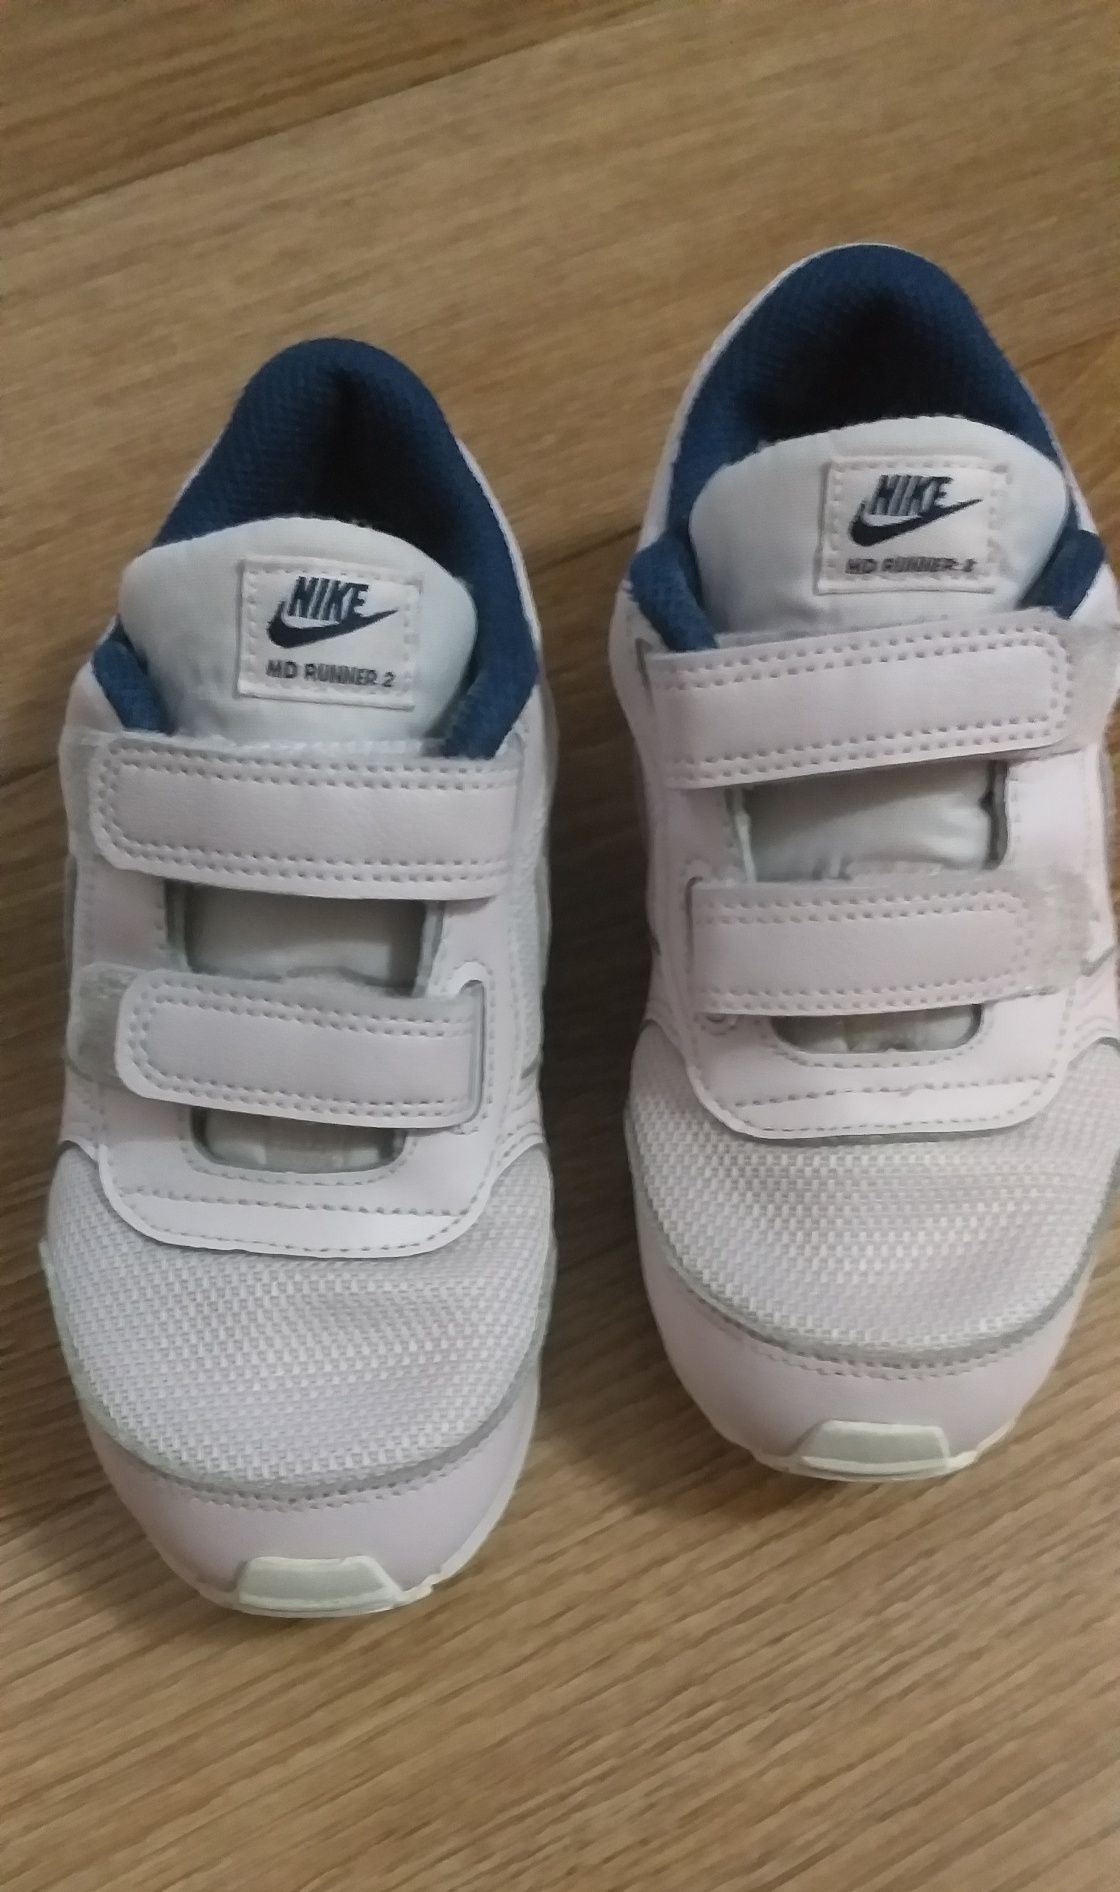 CAMPER детски спортни обувки, Nike MD Running 2 оригинални маратонки